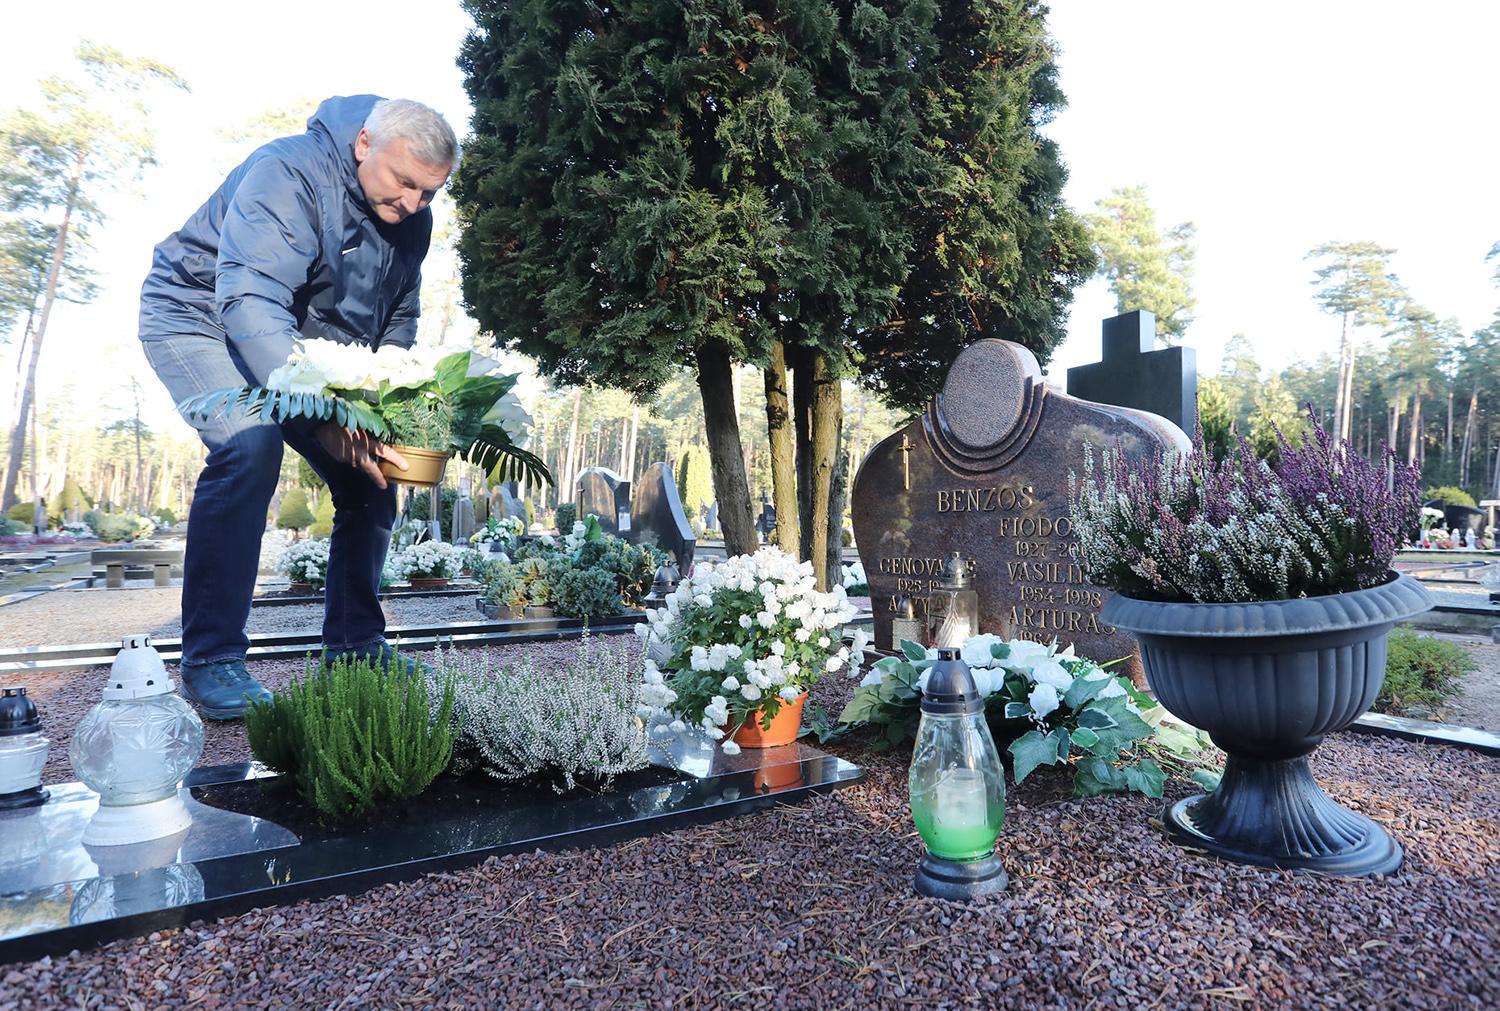 Futbolo turnyrą skyrė A. Benzos atminimui / Dainiaus Vyto fotoinformacija  Turnyro dalyviai aplankė netikėtai mirusio futbolininko Arvydo Benzos kapą.